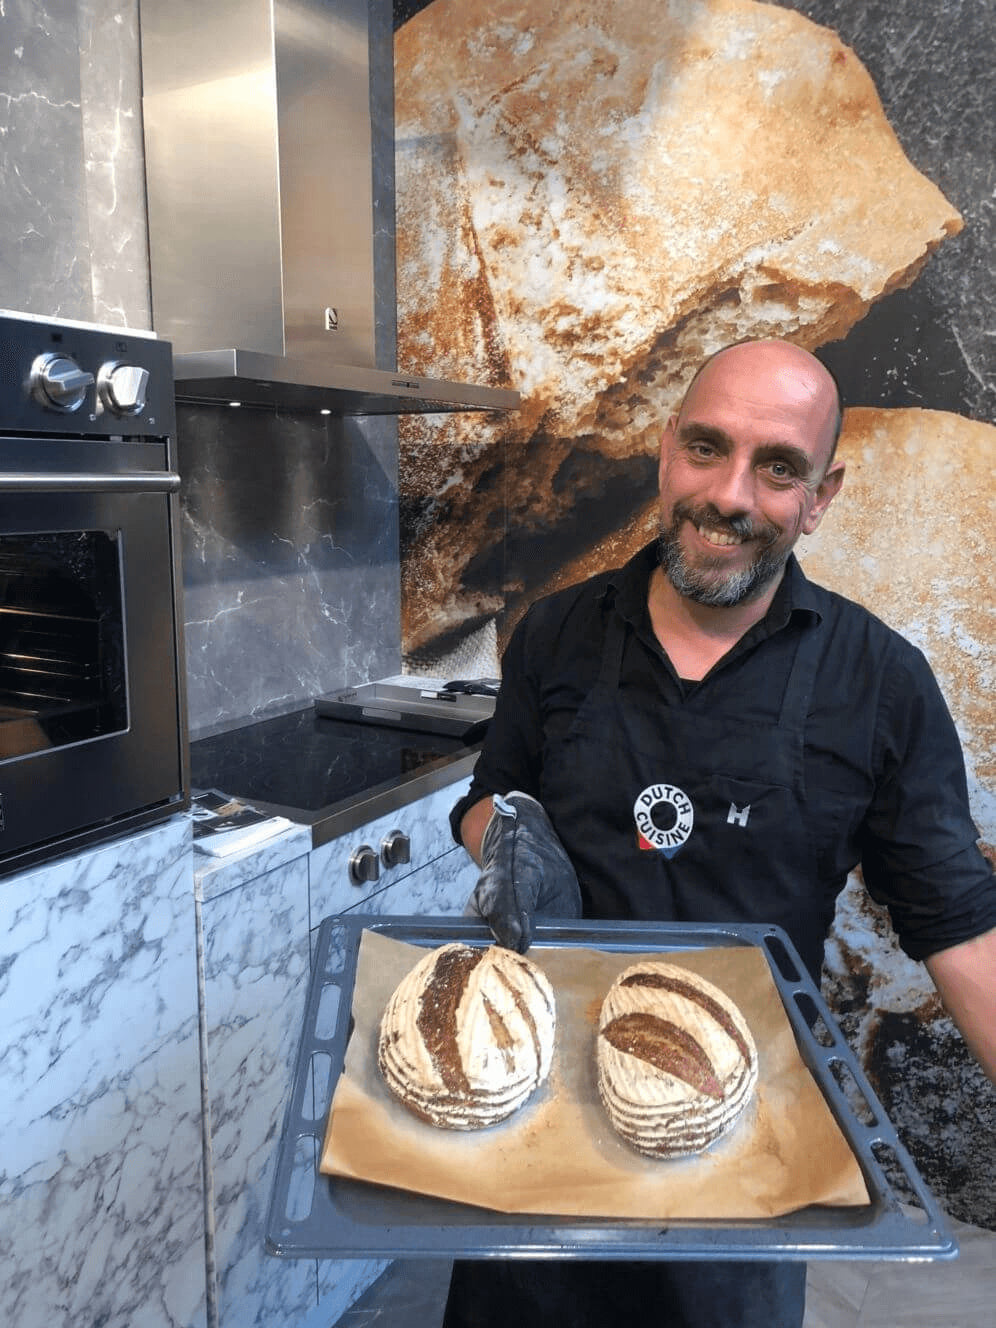 'Heel Holland bakt' in Steel Cucine ovens